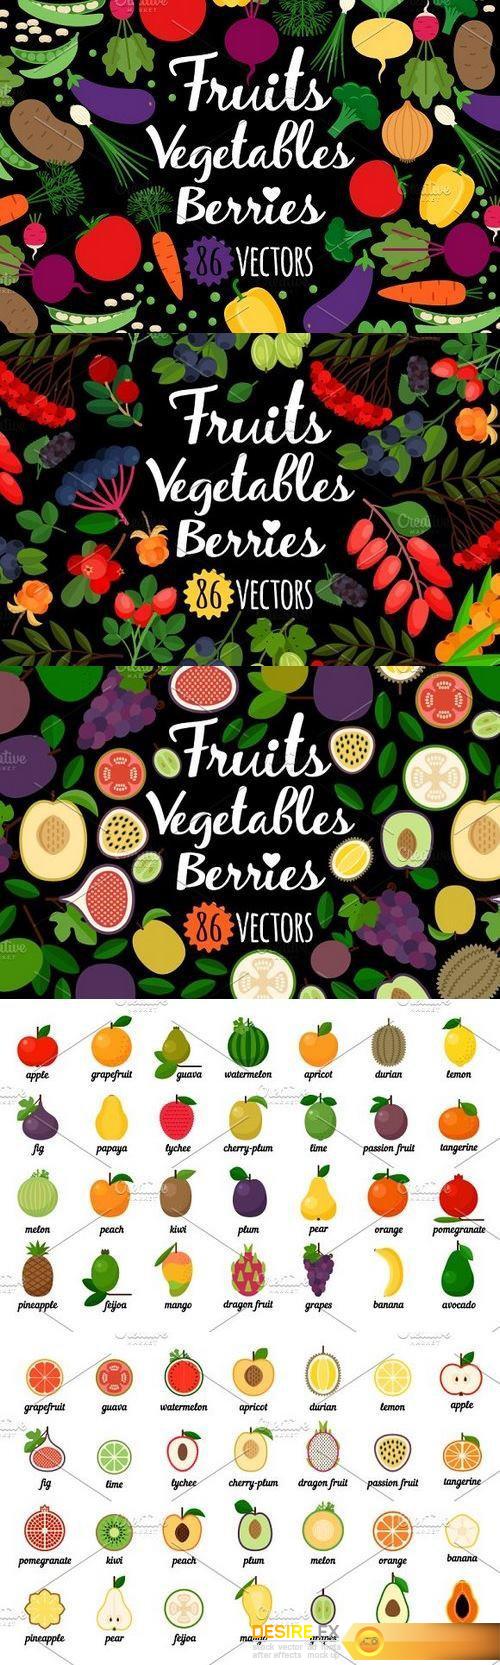 CM - Vegetables, fruits, berries 1327298